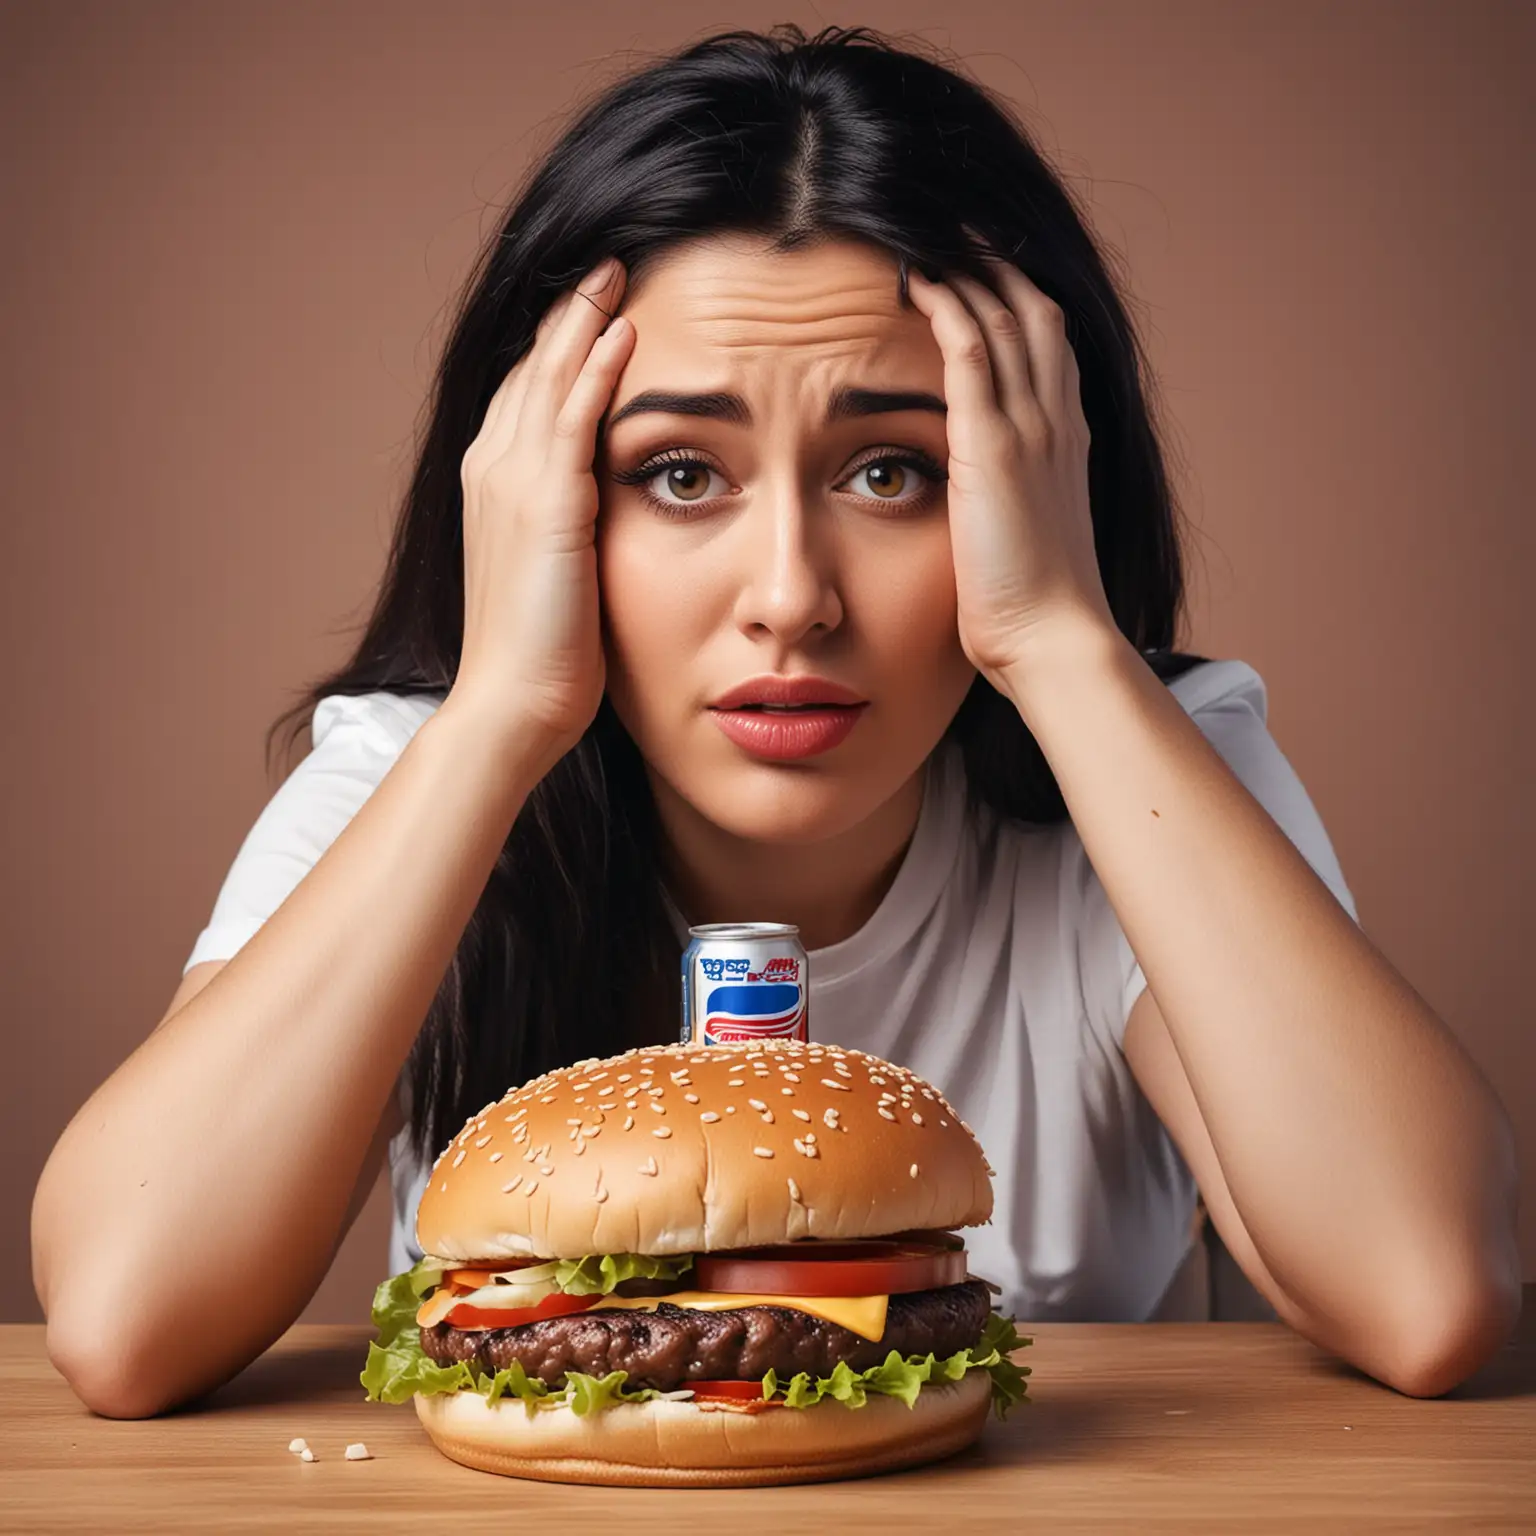  На фотографии женщина с грустным выражением лица смотрит на большой аппетитный гамбургер и бутылку Пепси, лежащие перед ней.


